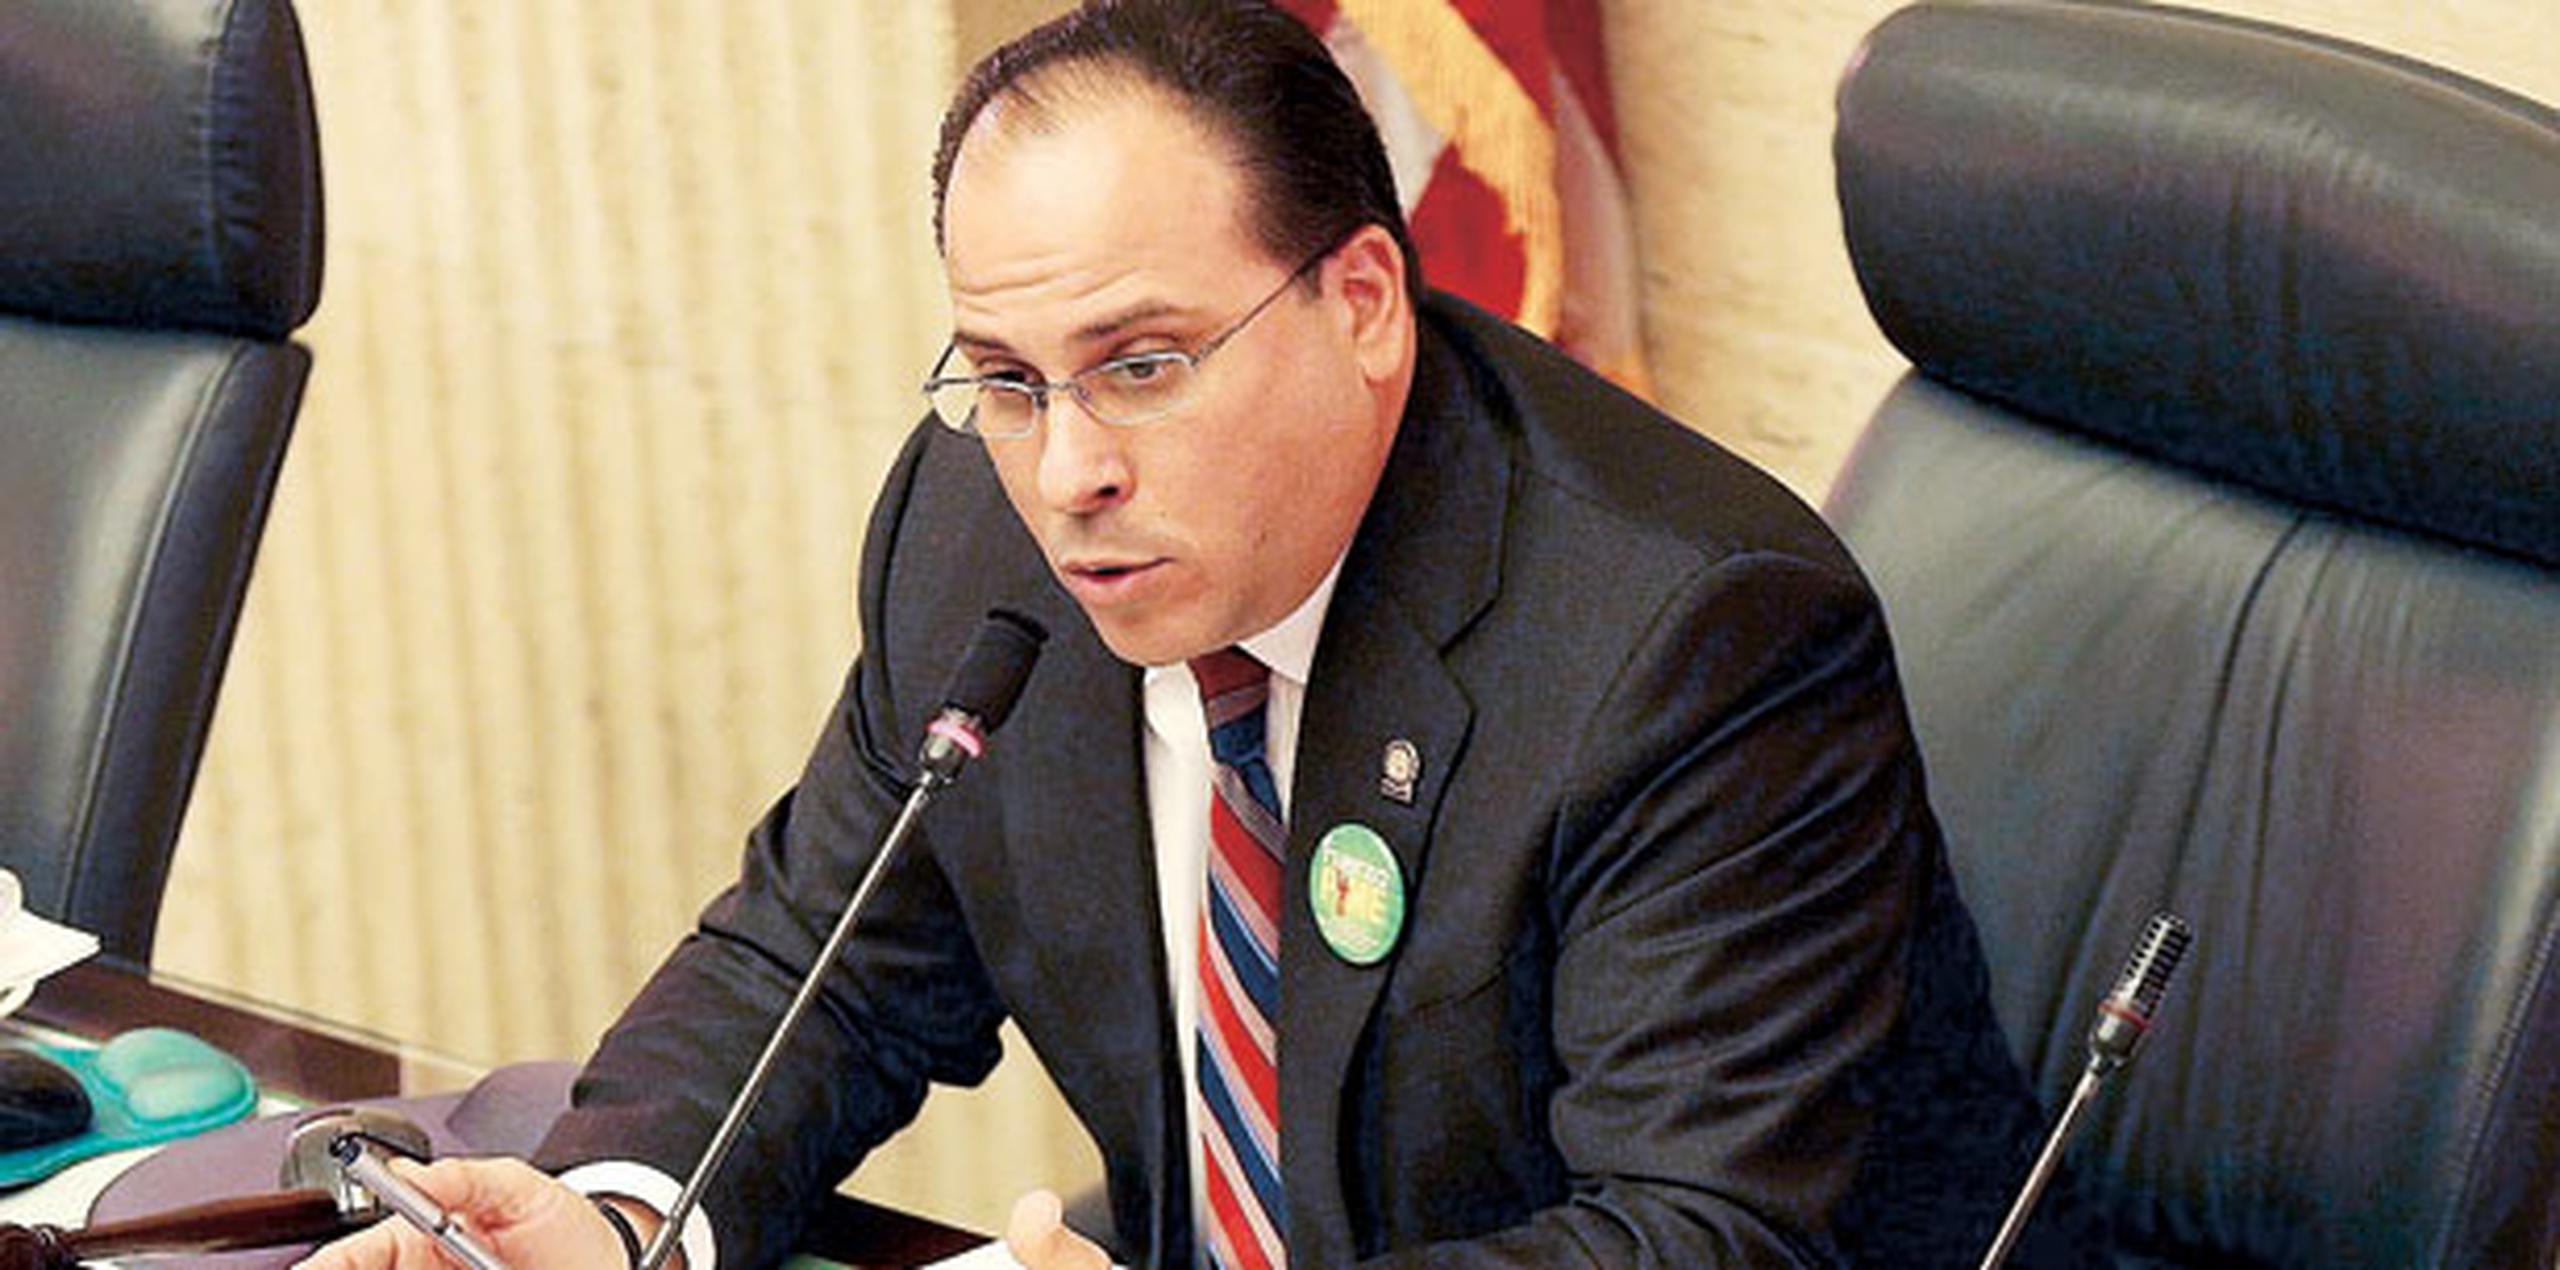 Según Perelló, hasta el momento, ningún miembro de su delegación le ha manifestado estar opuesto a la pieza legislativa. (Archivo)